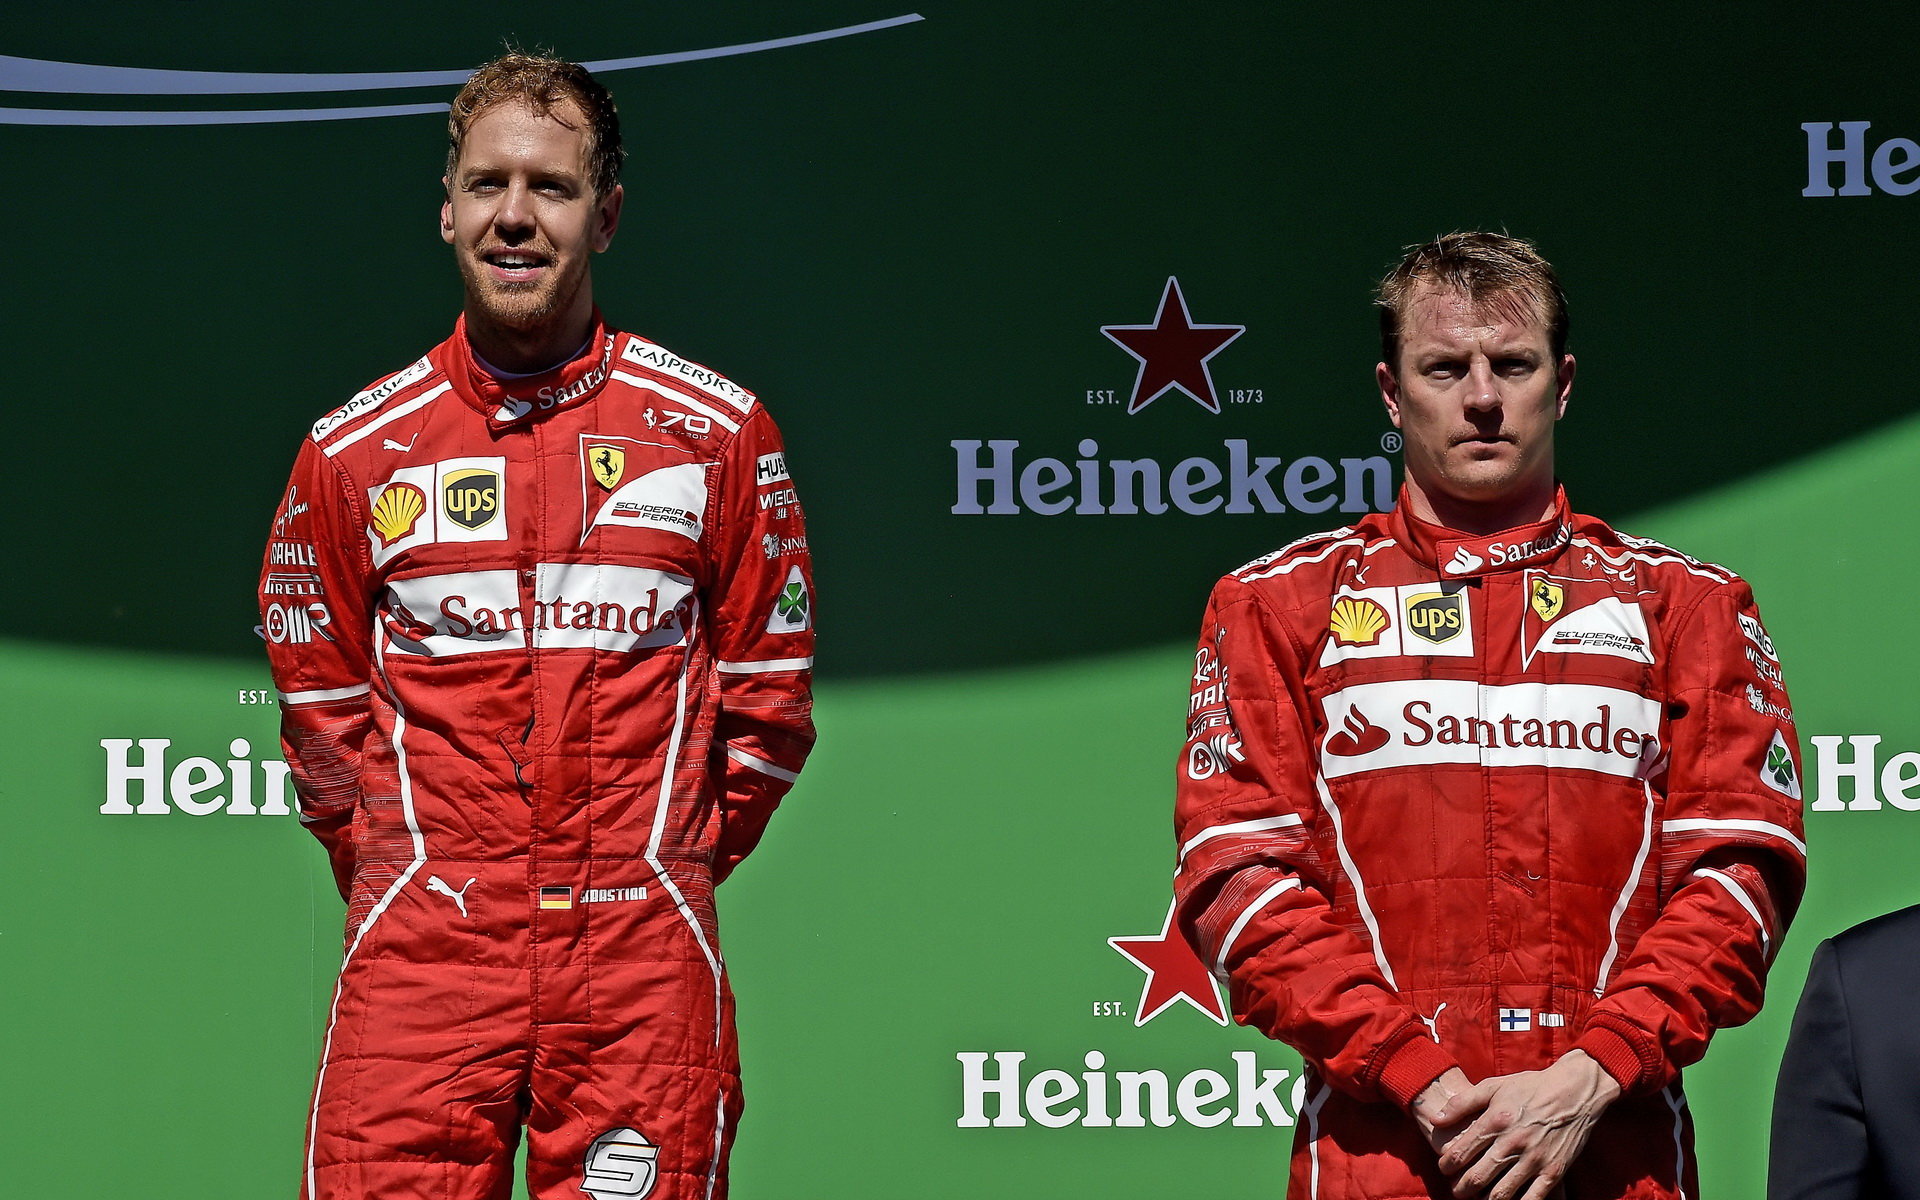 Kimi Räikkönen letos dost zaostal za svým týmovým kolegou i svými očekáváními